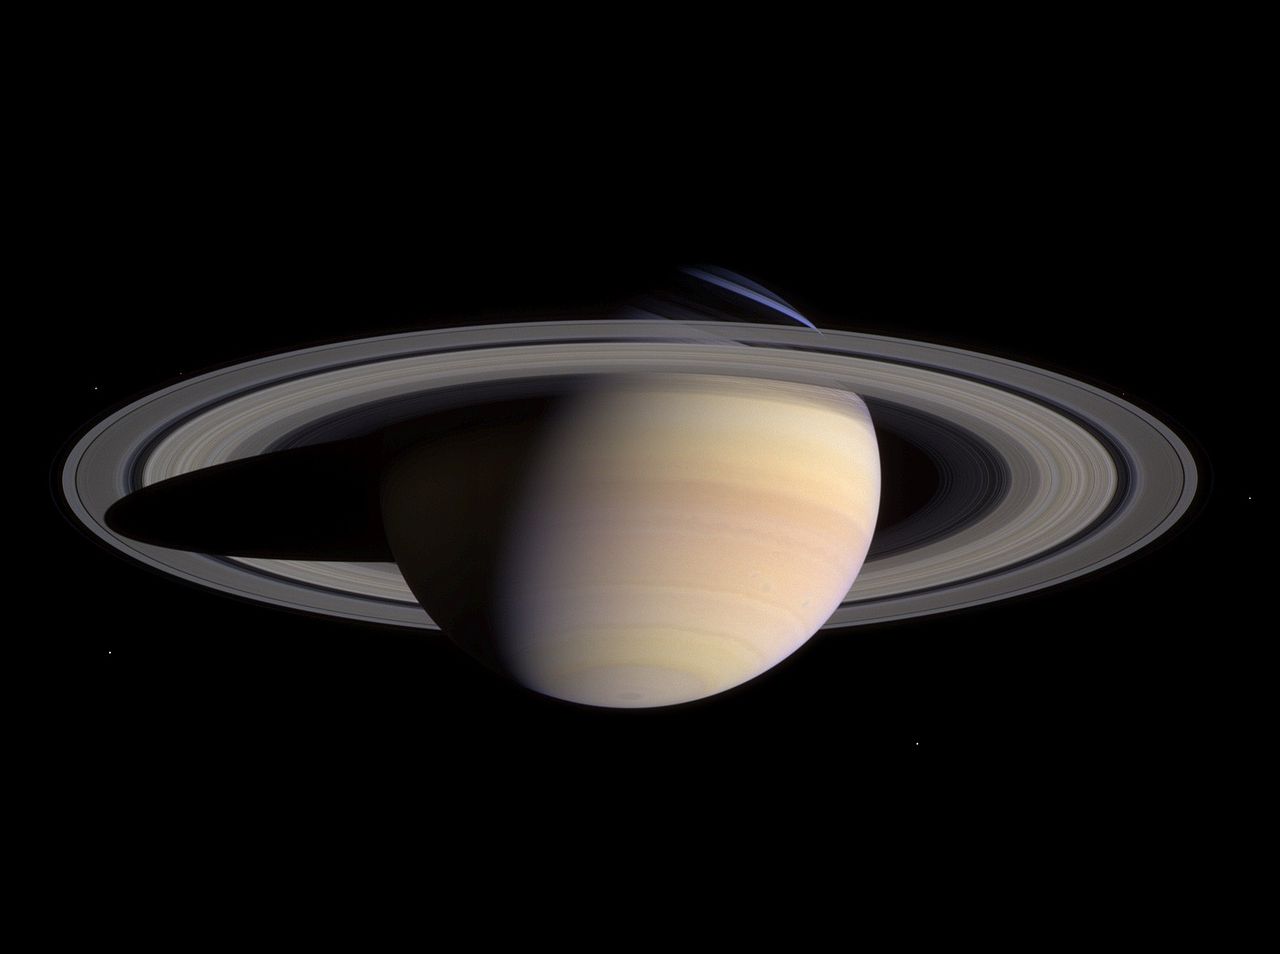 「綿菓子みたいな惑星」の正体は、遠くから見た土星の姿かもしれないの画像 2/3